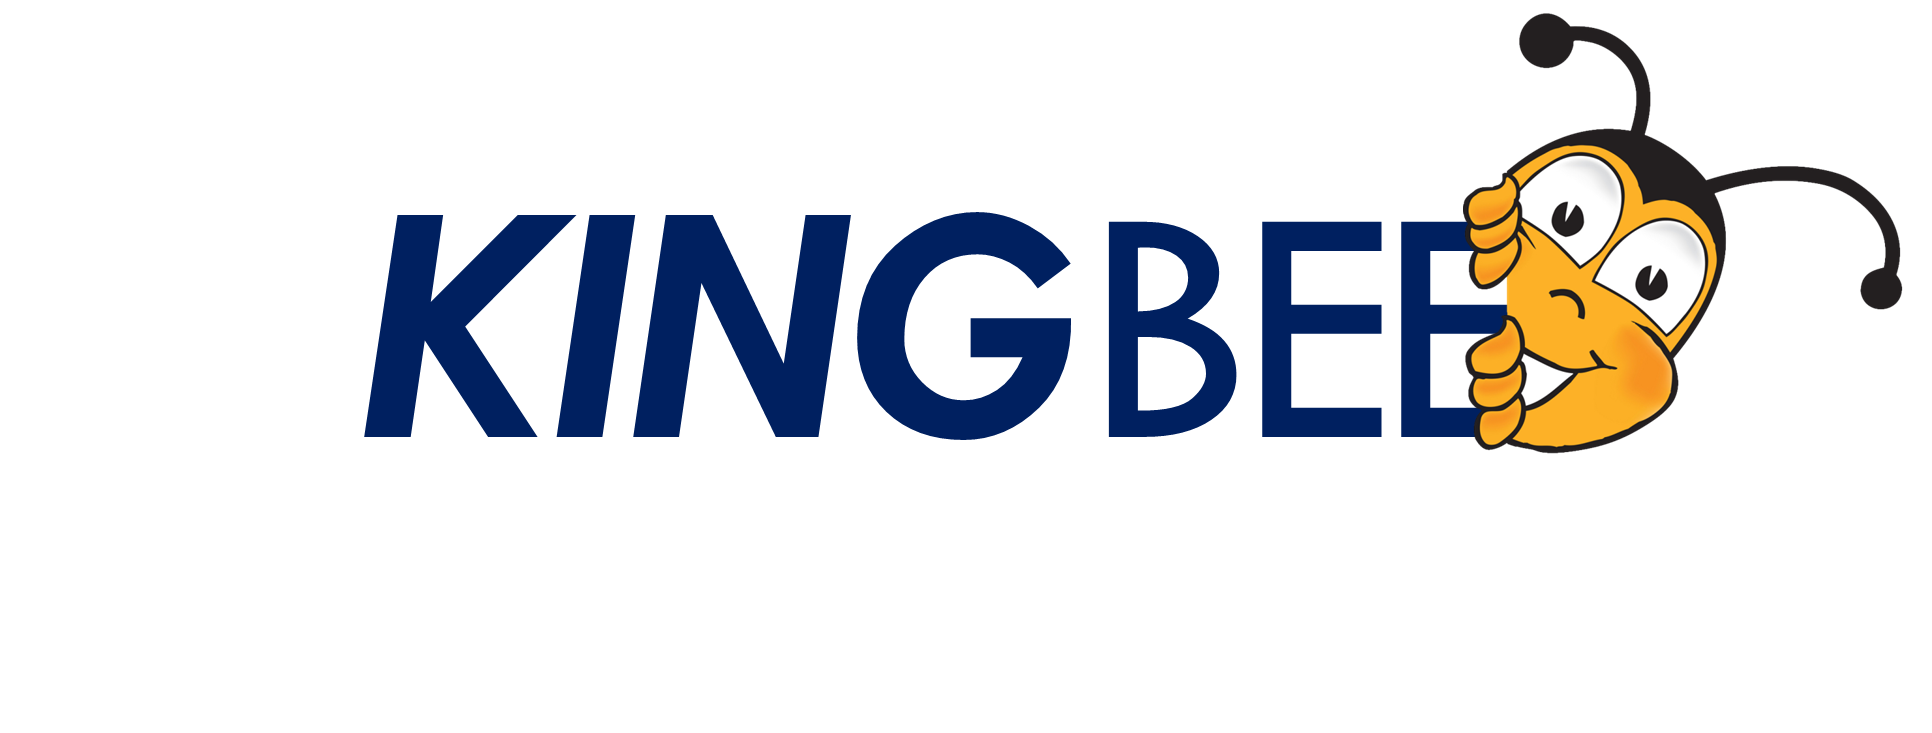 kingbee_logo.png